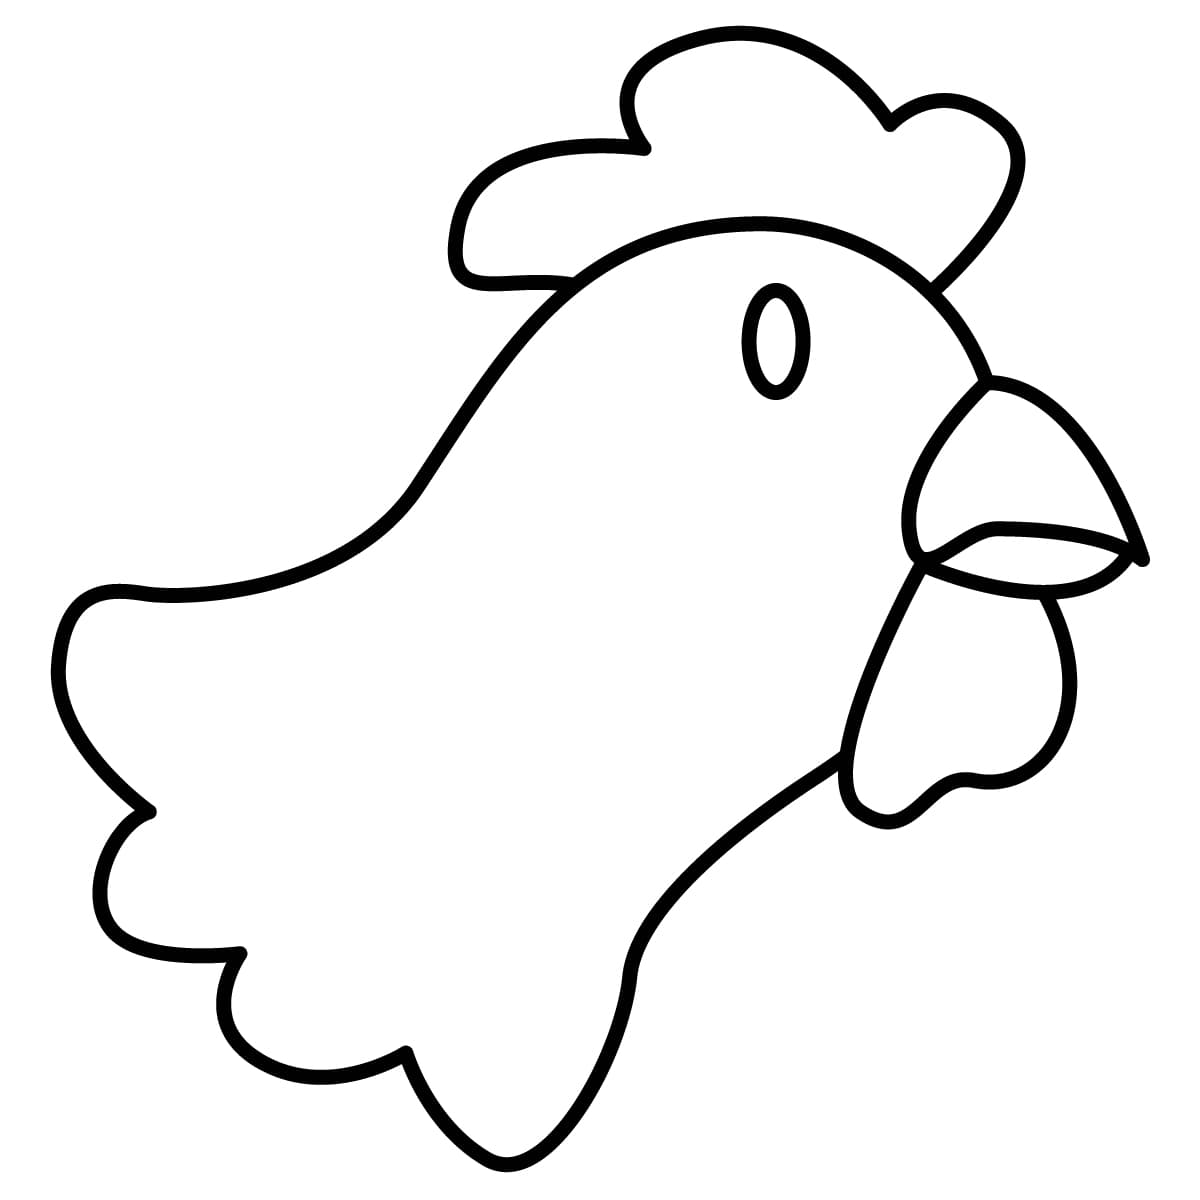 Dibujo de gallina para colorear e imprimir - Dibujos y colores